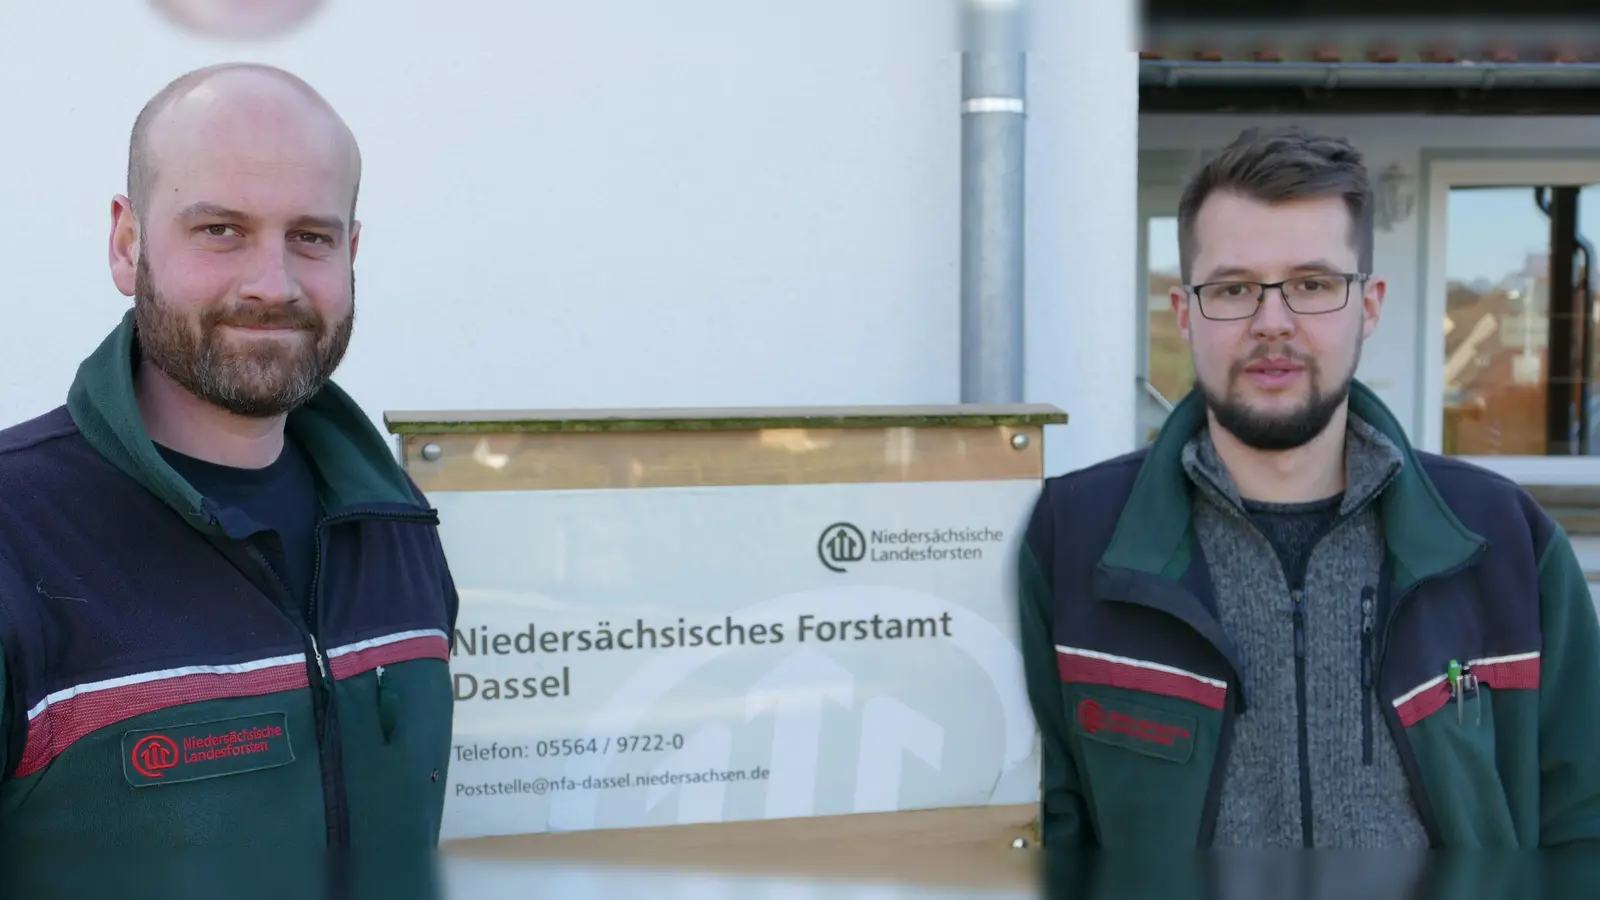 Neu im Team des Forstamtes Dassel: Tim Höpfner (links im Bild) und Nils Flechtner leiten die Reviere Eschershausen und Hardegsen. (Foto: Rudolph/Landesforsten)